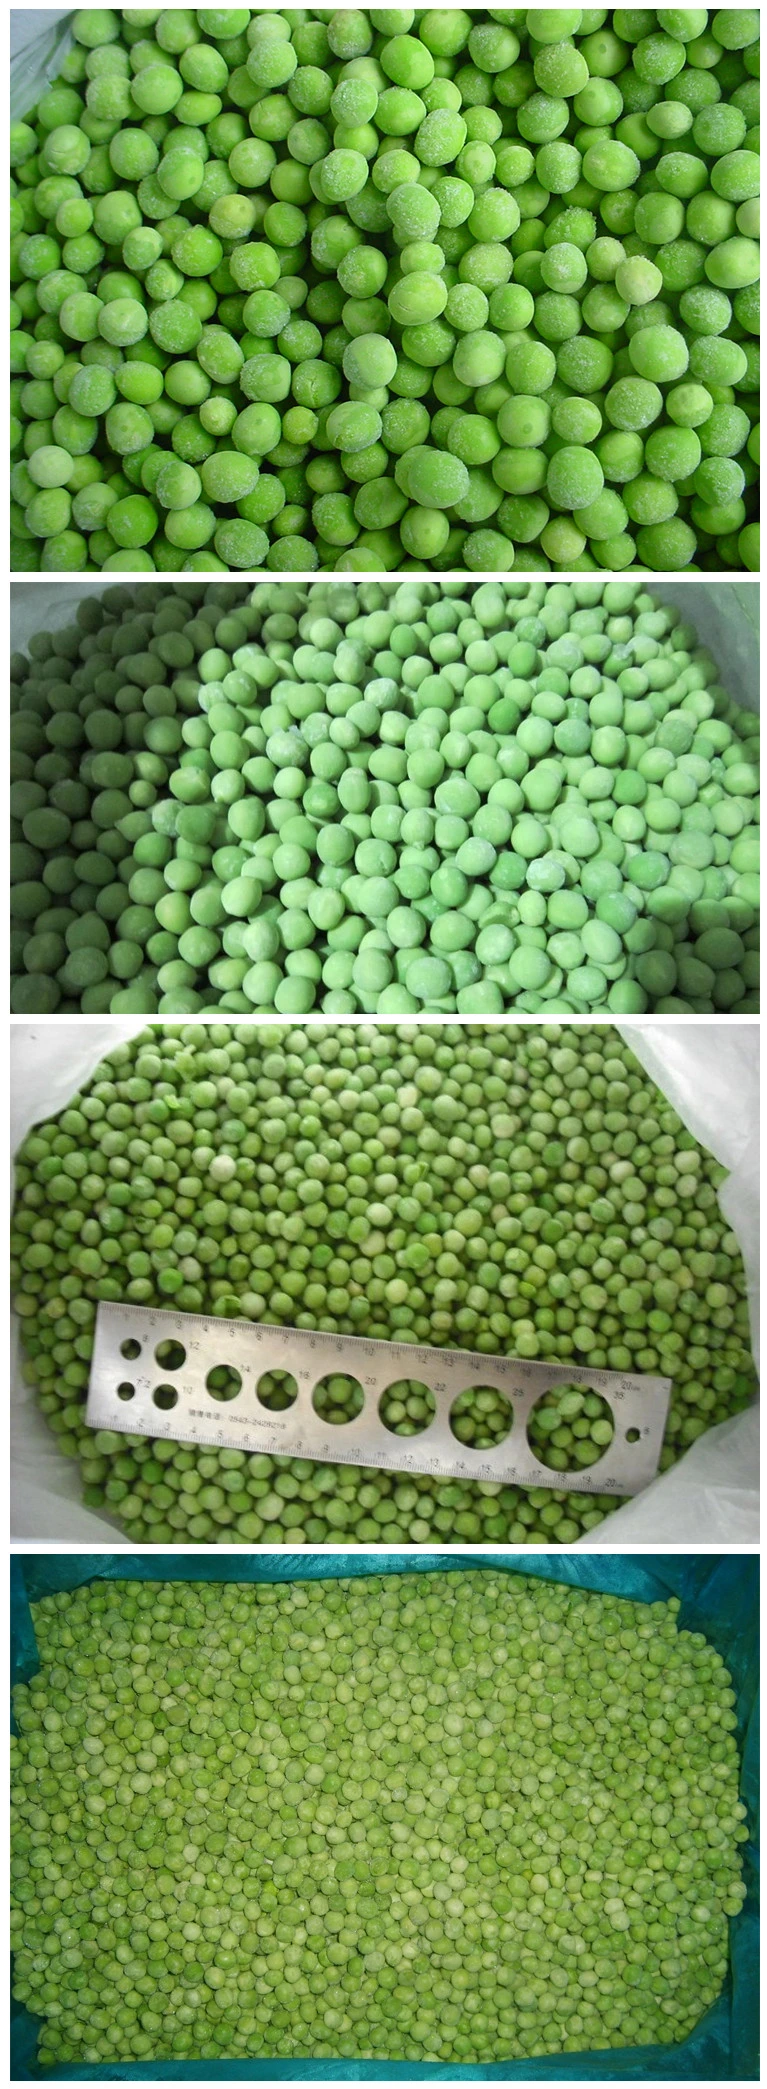 Frozen Beans/ IQF Green Beans Cut/ Frozen Green Beans